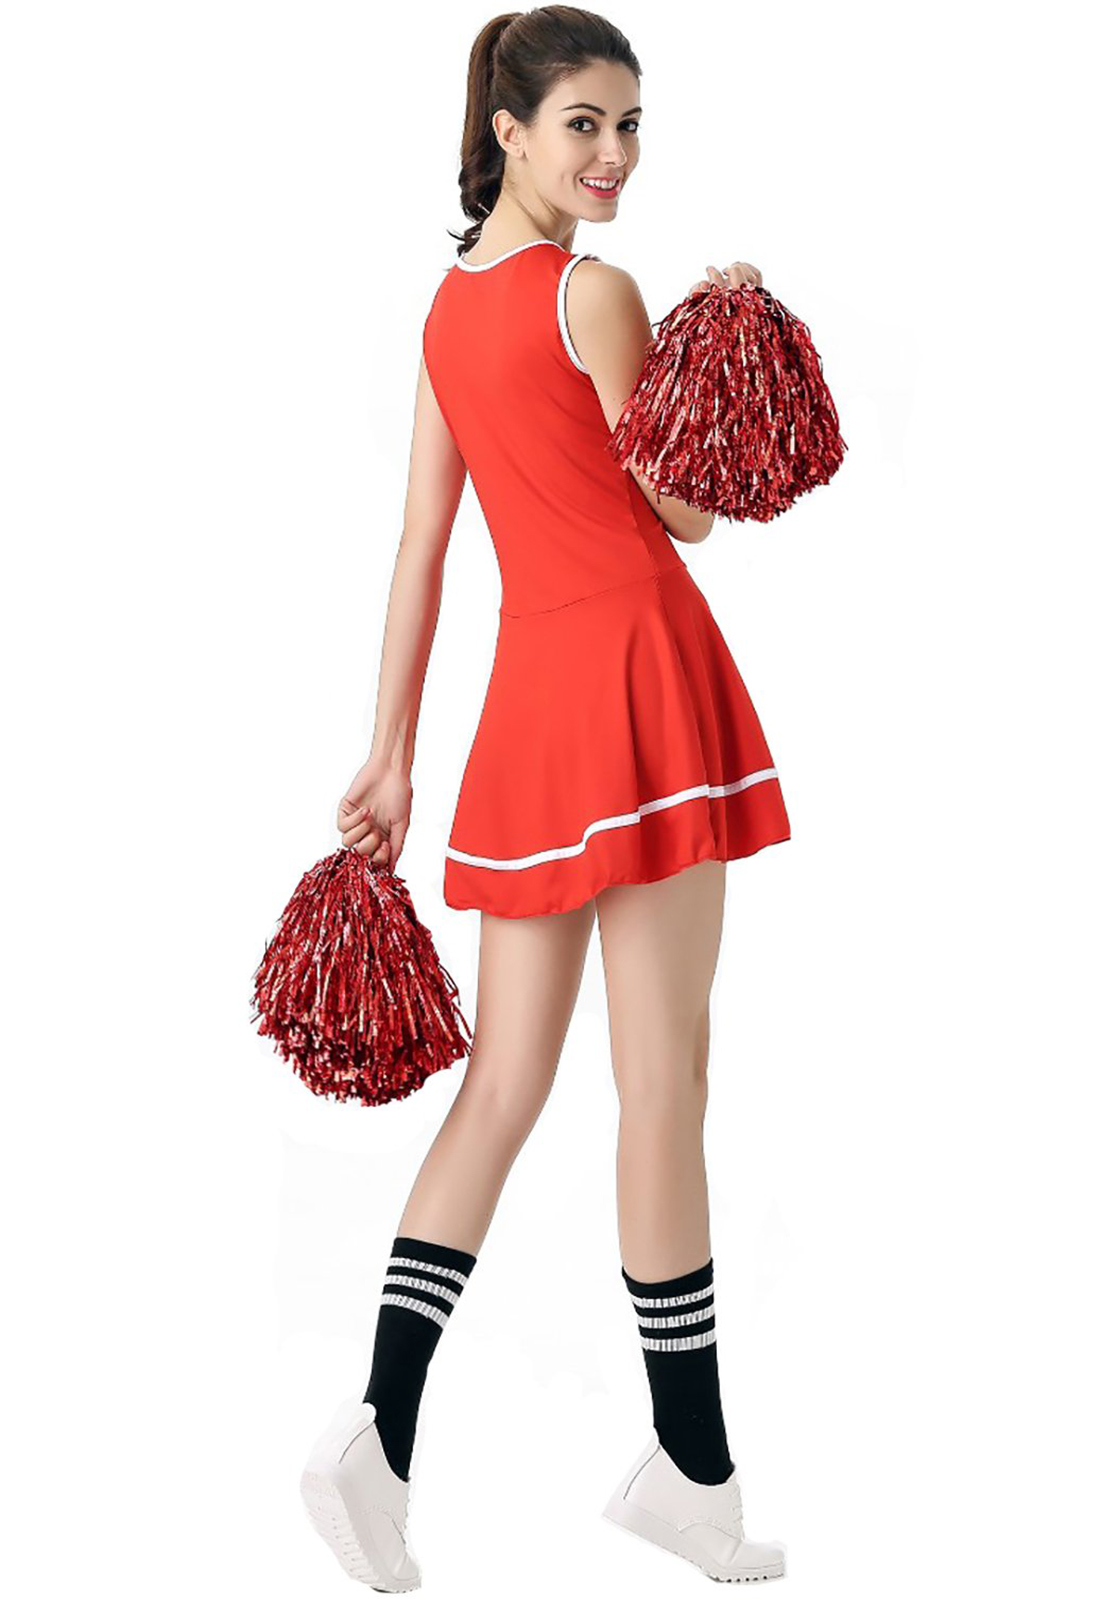 Disfraz de animadora roja Disfraz de animadora musical de escuela secundaria Uniforme sin pompones